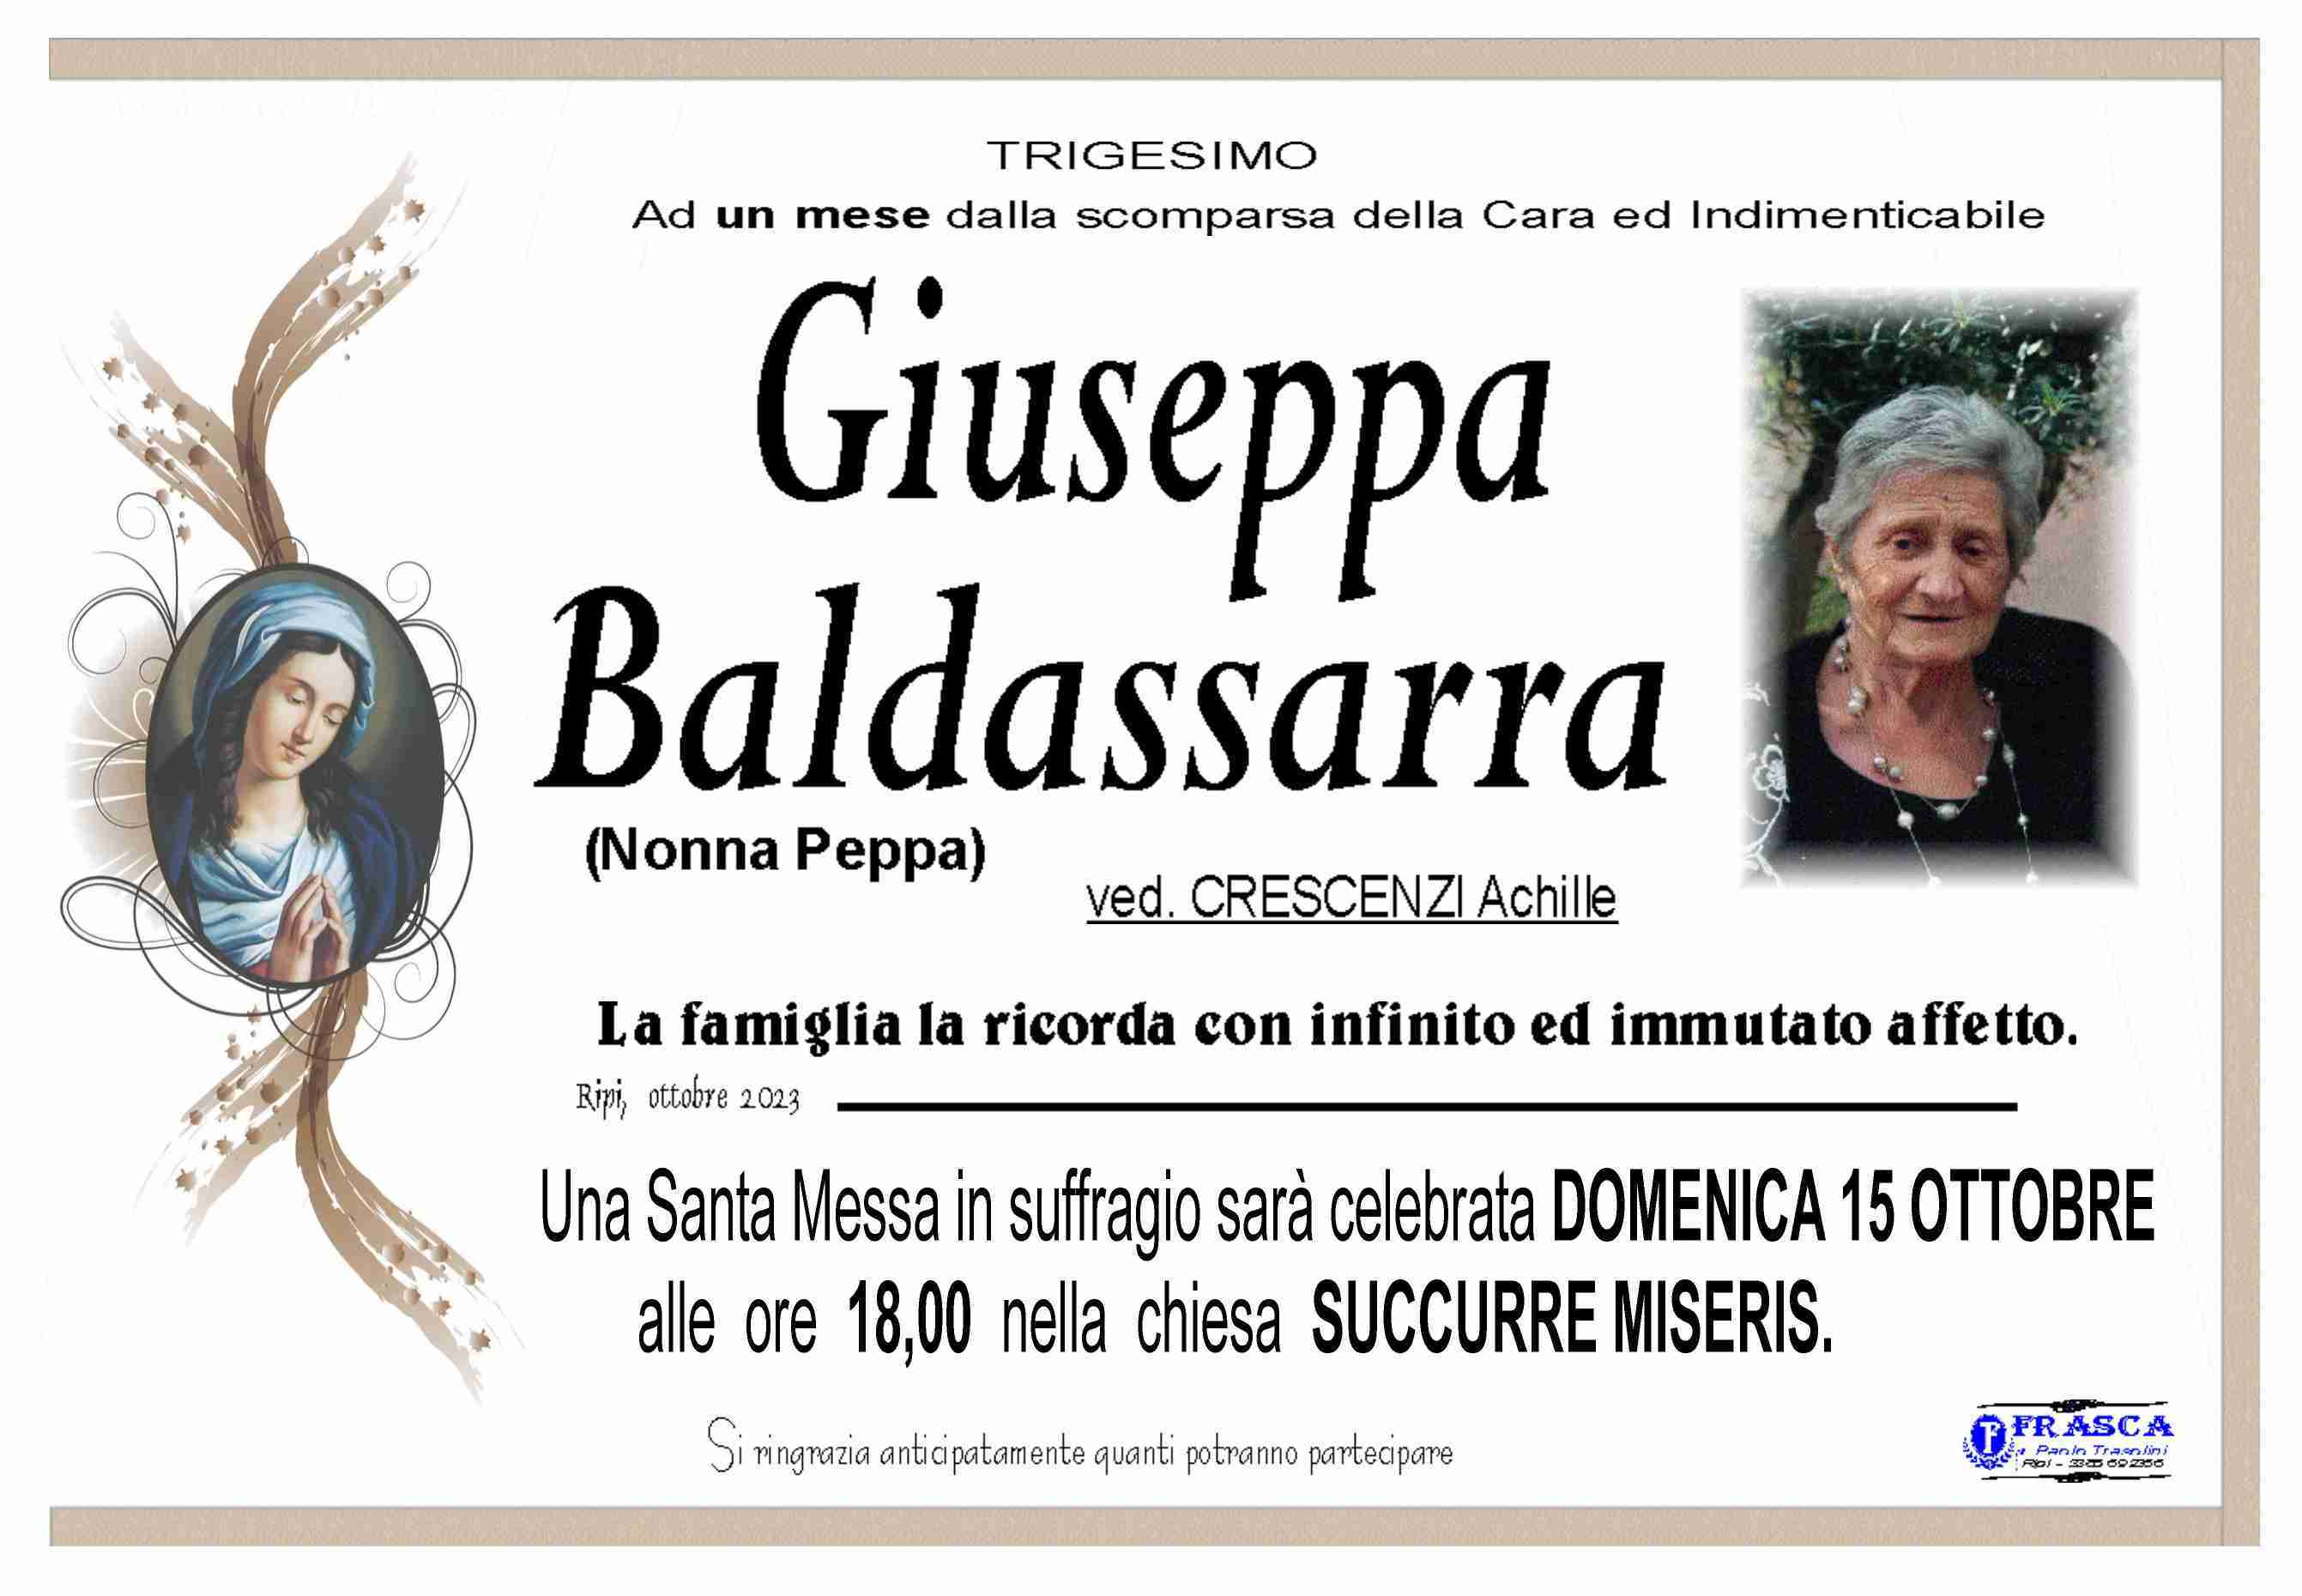 Giuseppa Baldassarra